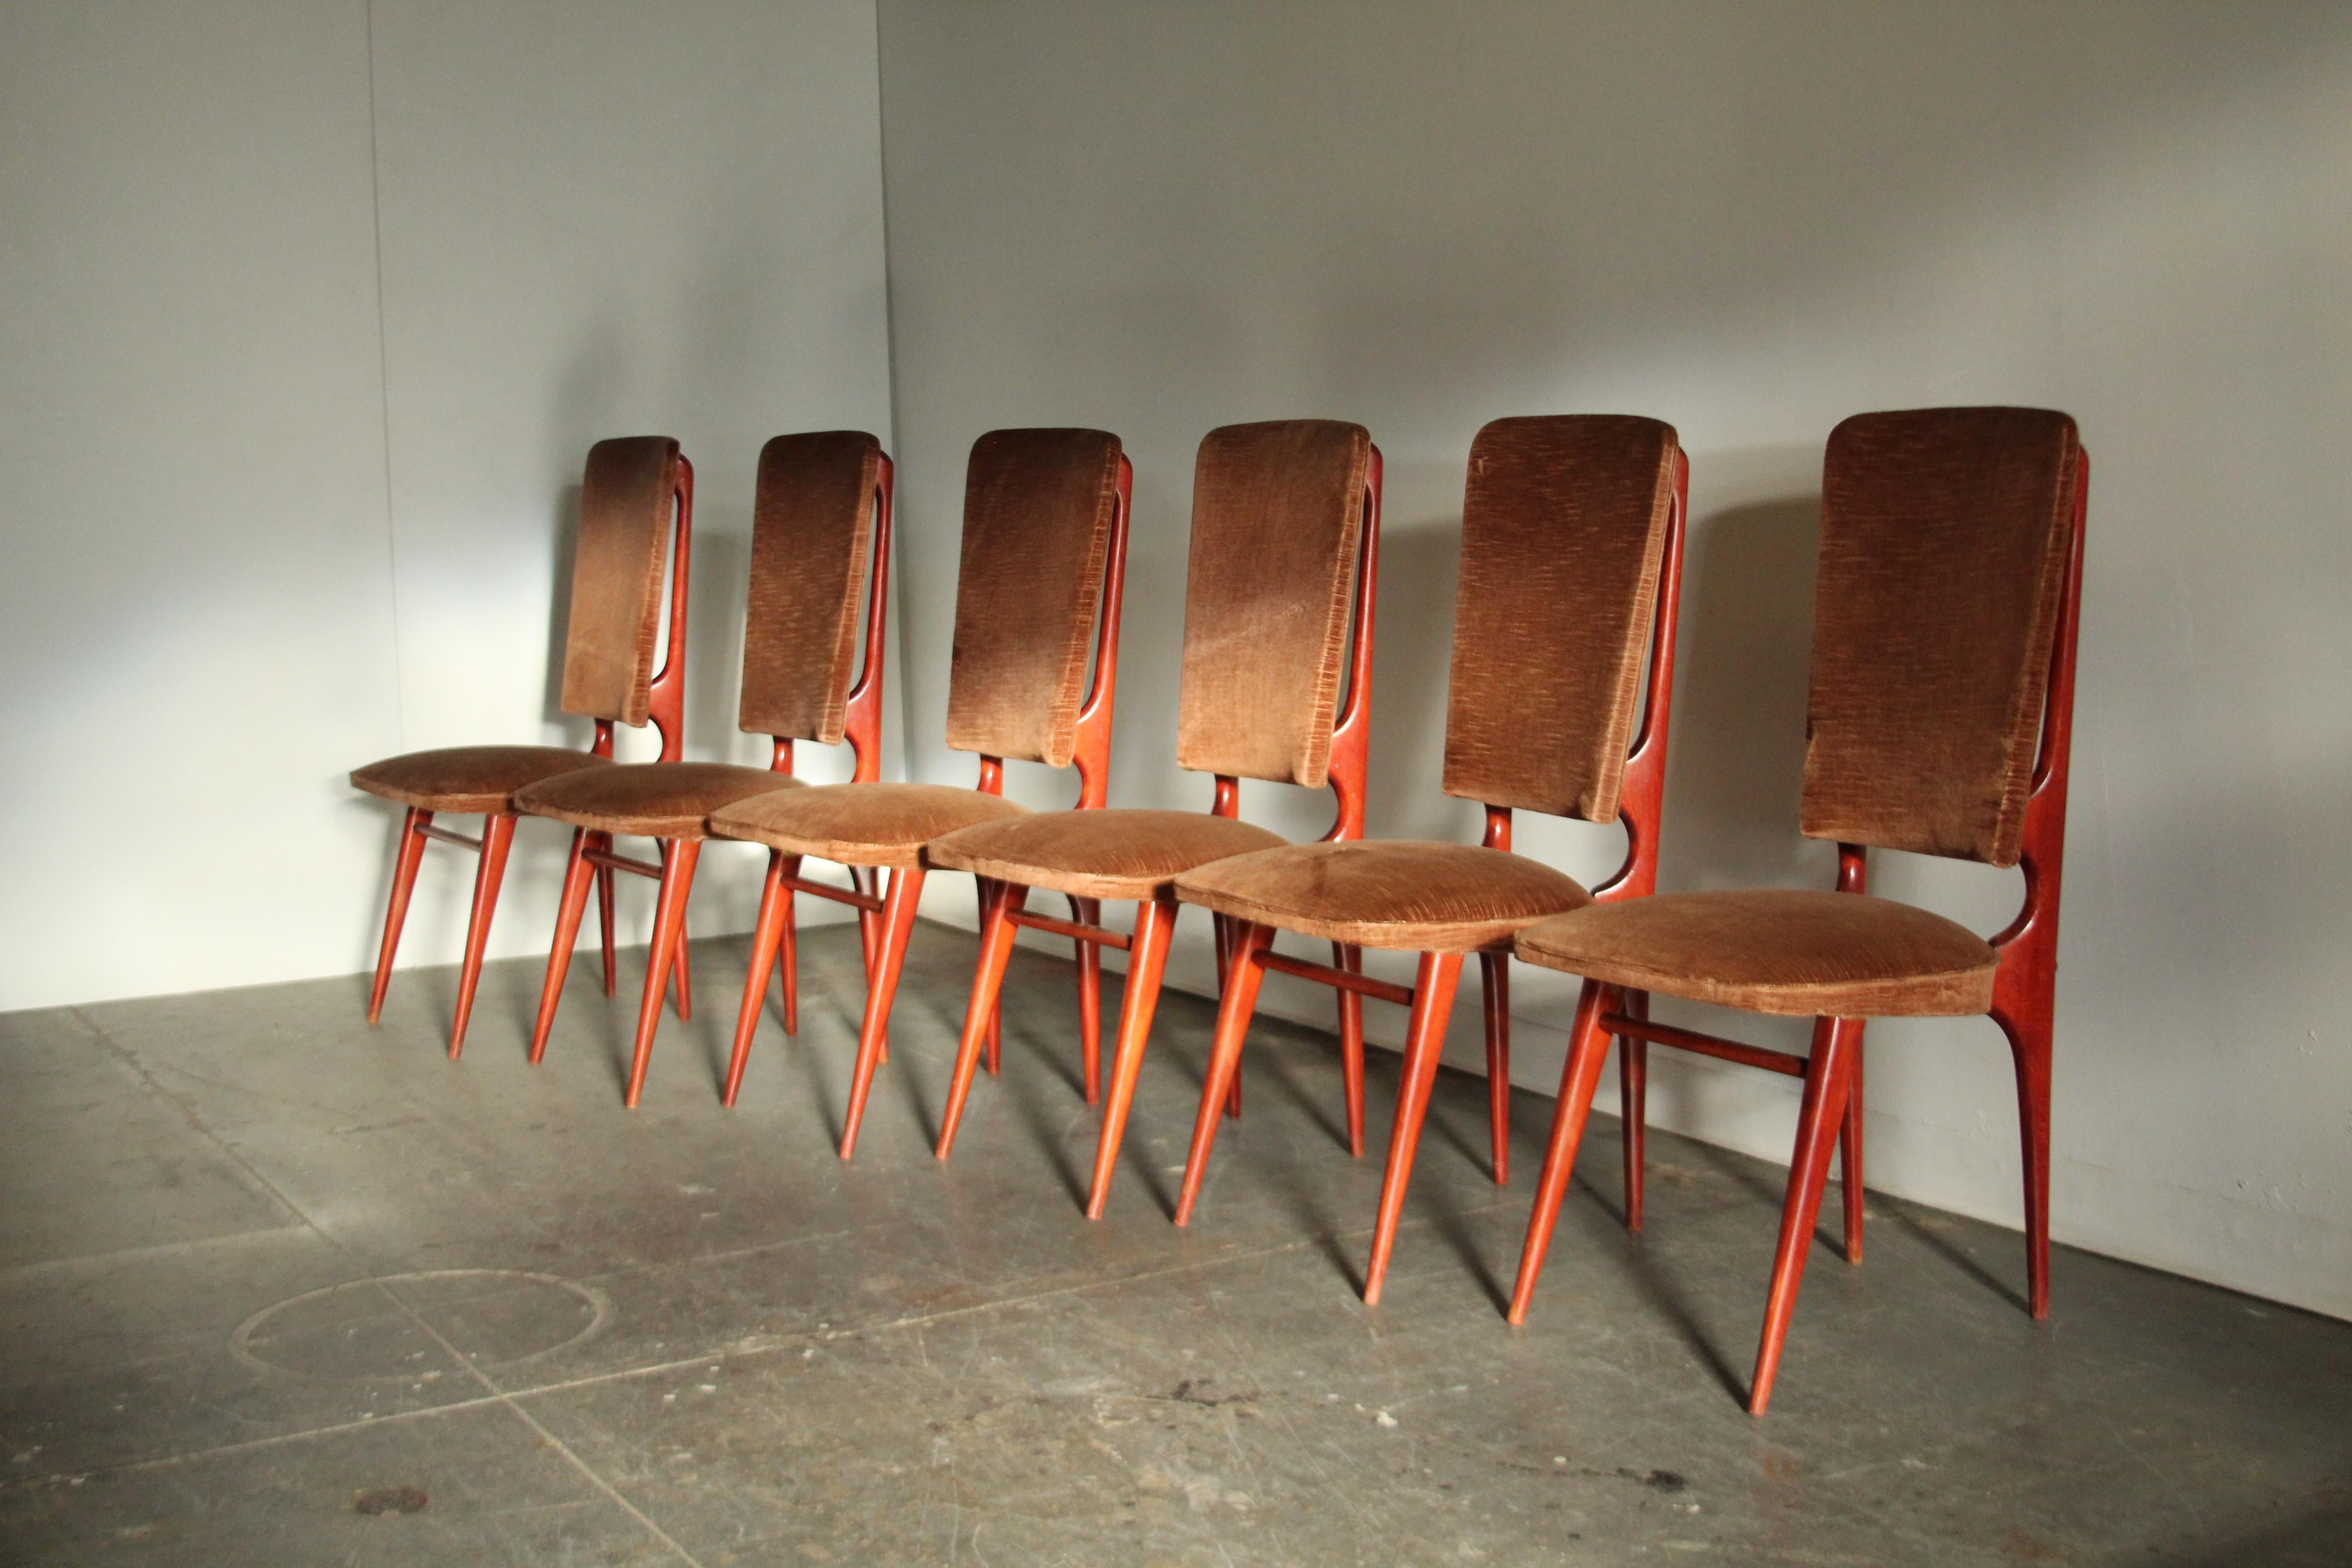 Un ensemble étonnant et peu commun de 6 chaises de salle à manger modernistes françaises produites par la Maison Stella dans les années 1950. Cadres sculpturaux épurés en hêtre teinté à l'aniline. Tapisserie d'origine en velours marron. Une forme